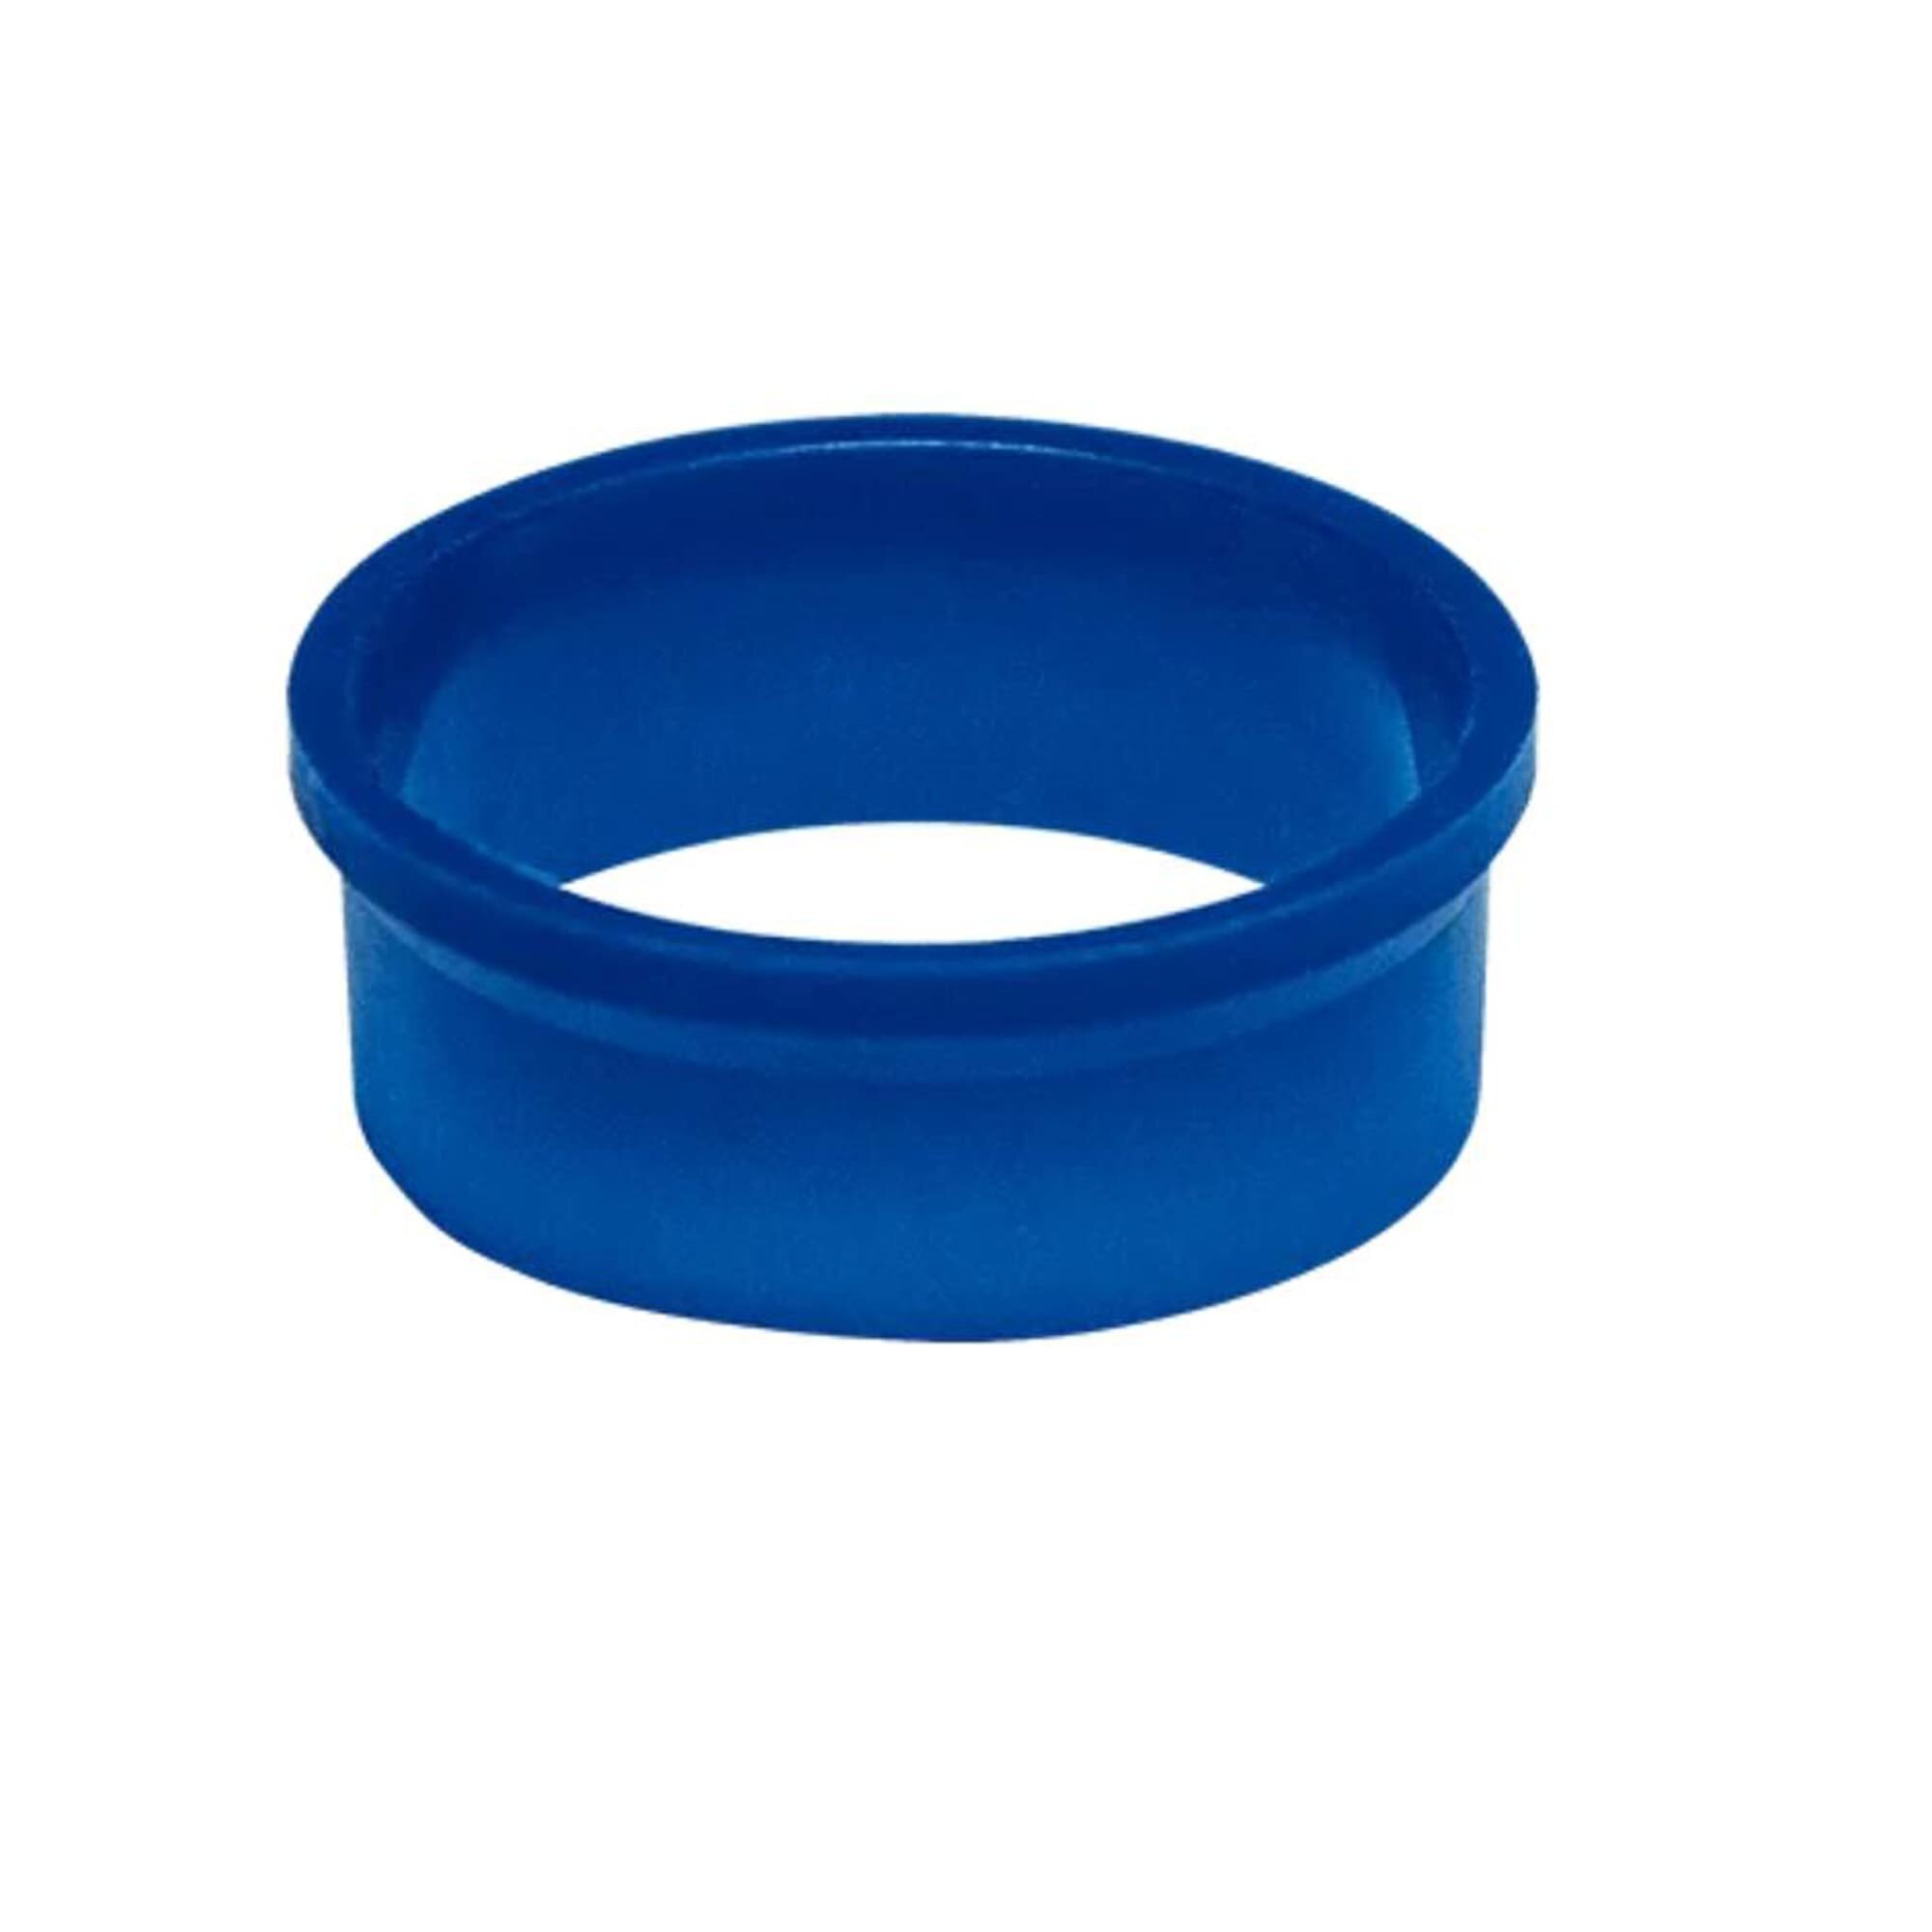 Прокладка коническая Орио ПП-2032 для сантехники 32 мм (2 шт.) синий цвет